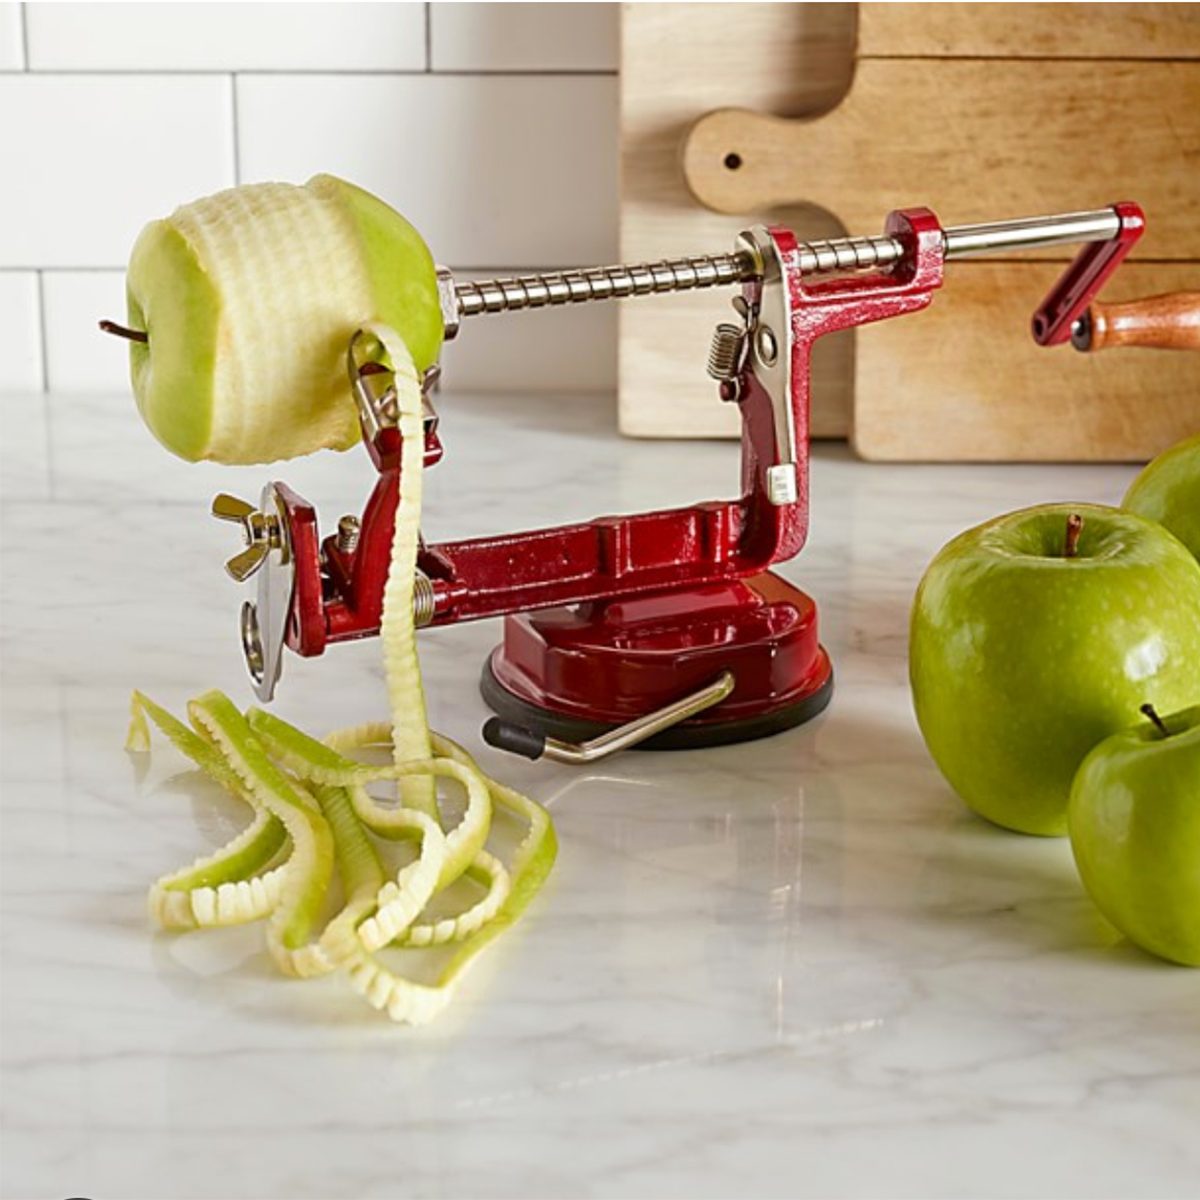 Apple peeler, corer, slicer